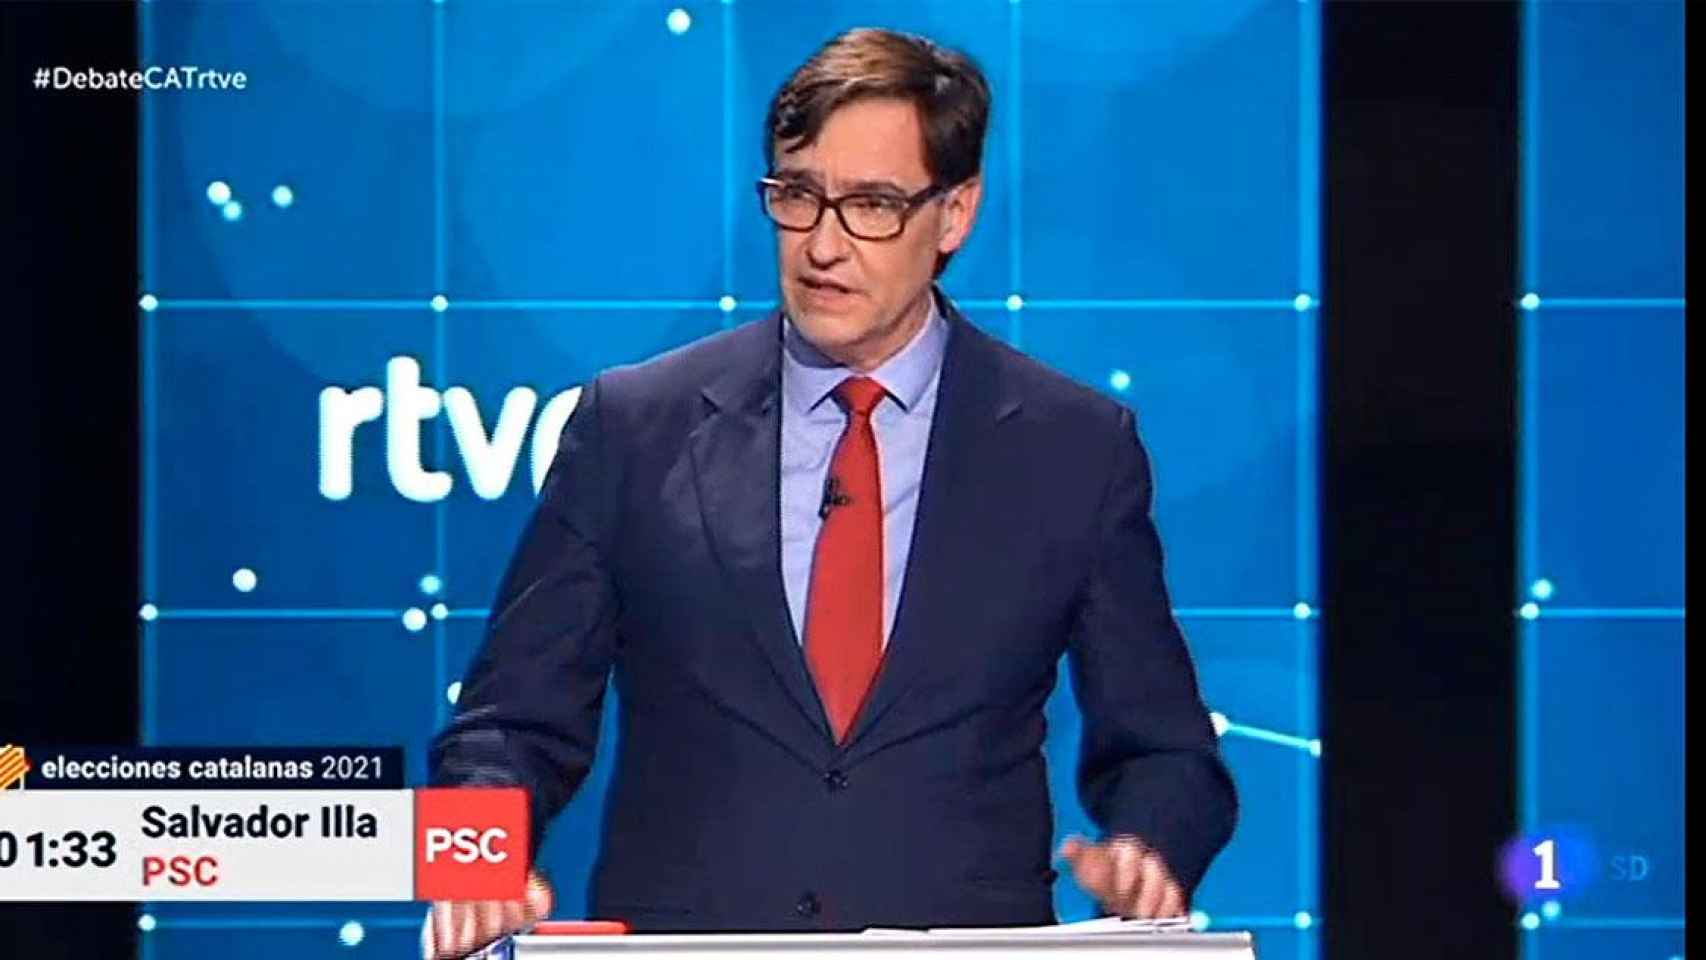 El candidato del PSC, Salvador Illa, en el debate de TVE / RTVE